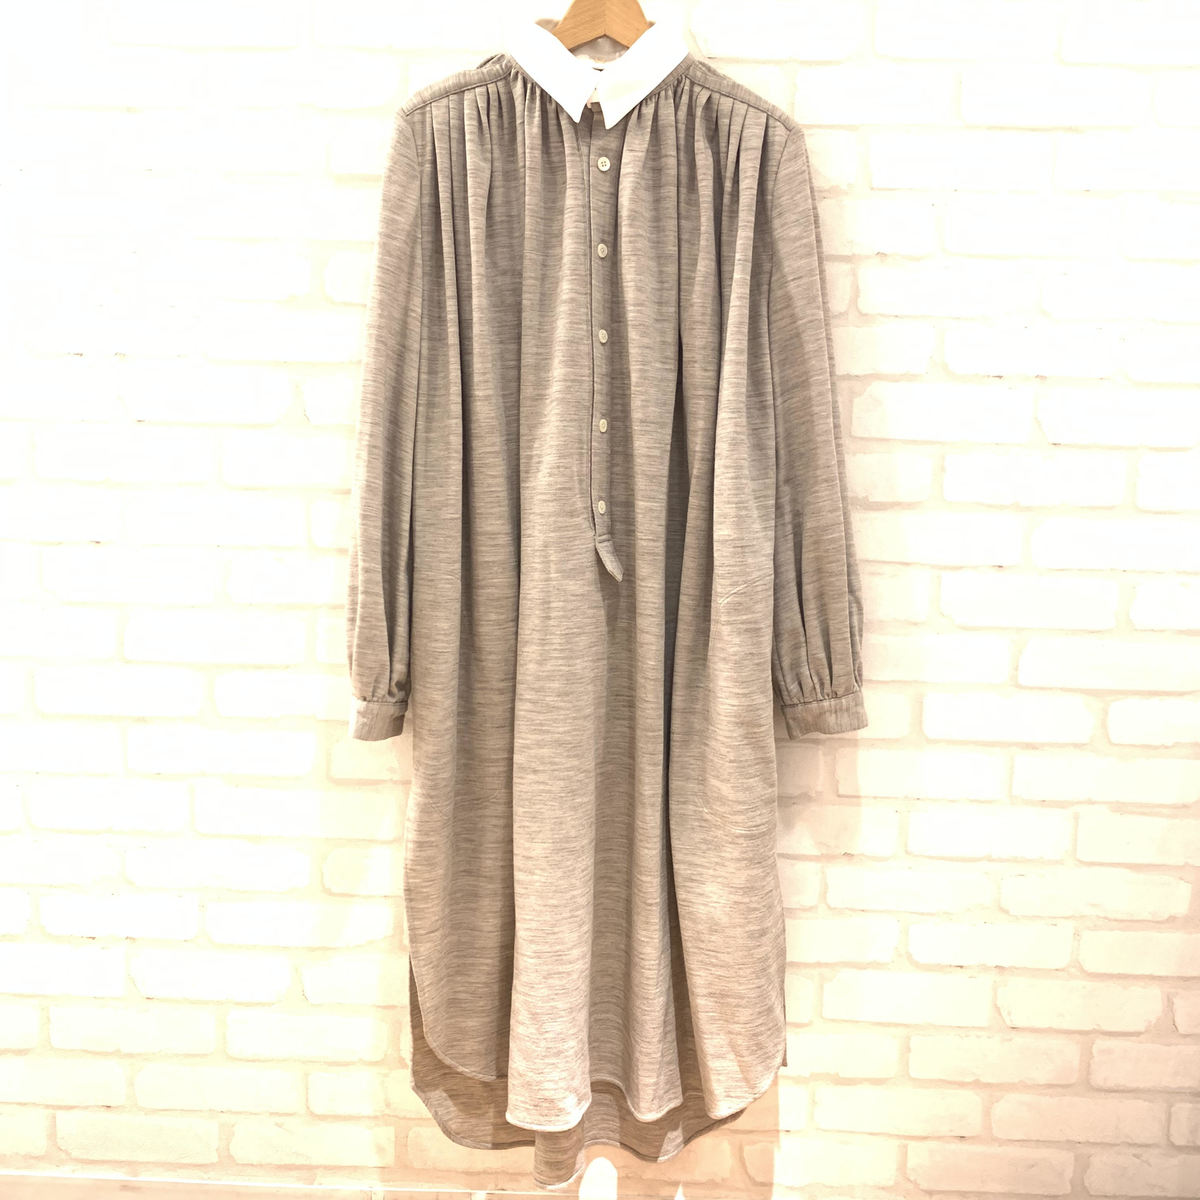 フミカウチダの洋服のブラウン Fu G 0p001 17秋冬 ウールシャツ ワンピースの買取実績です 19年8月1日公開の情報です エコスタイル